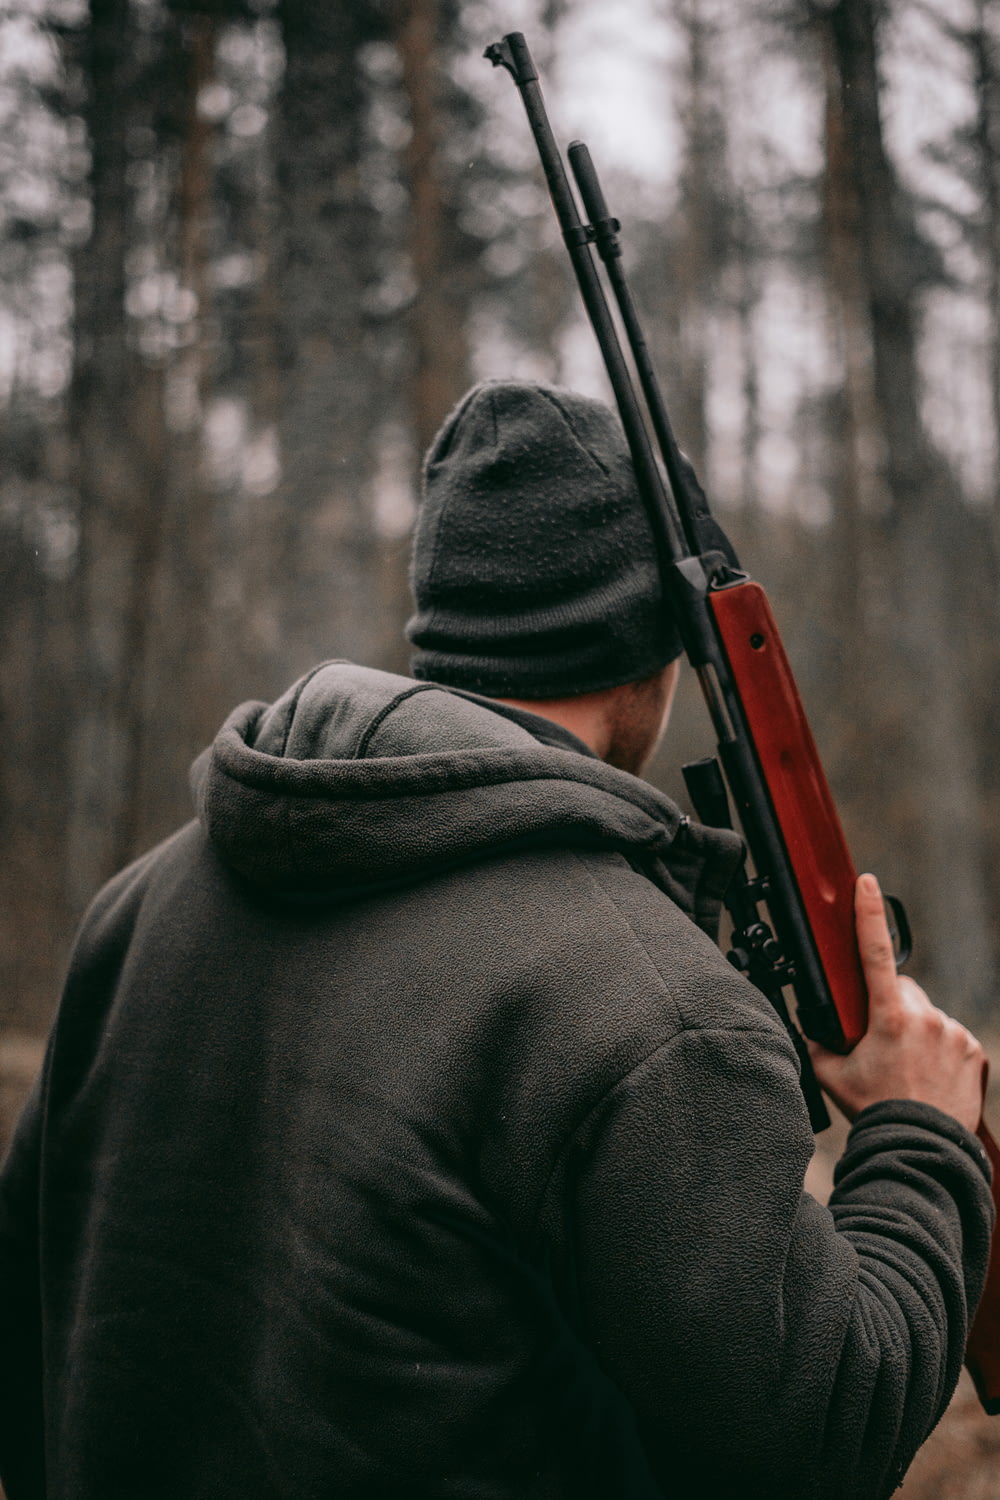 homme tenant un fusil de sniper brun et noir dans une photographie à mise au point peu profonde